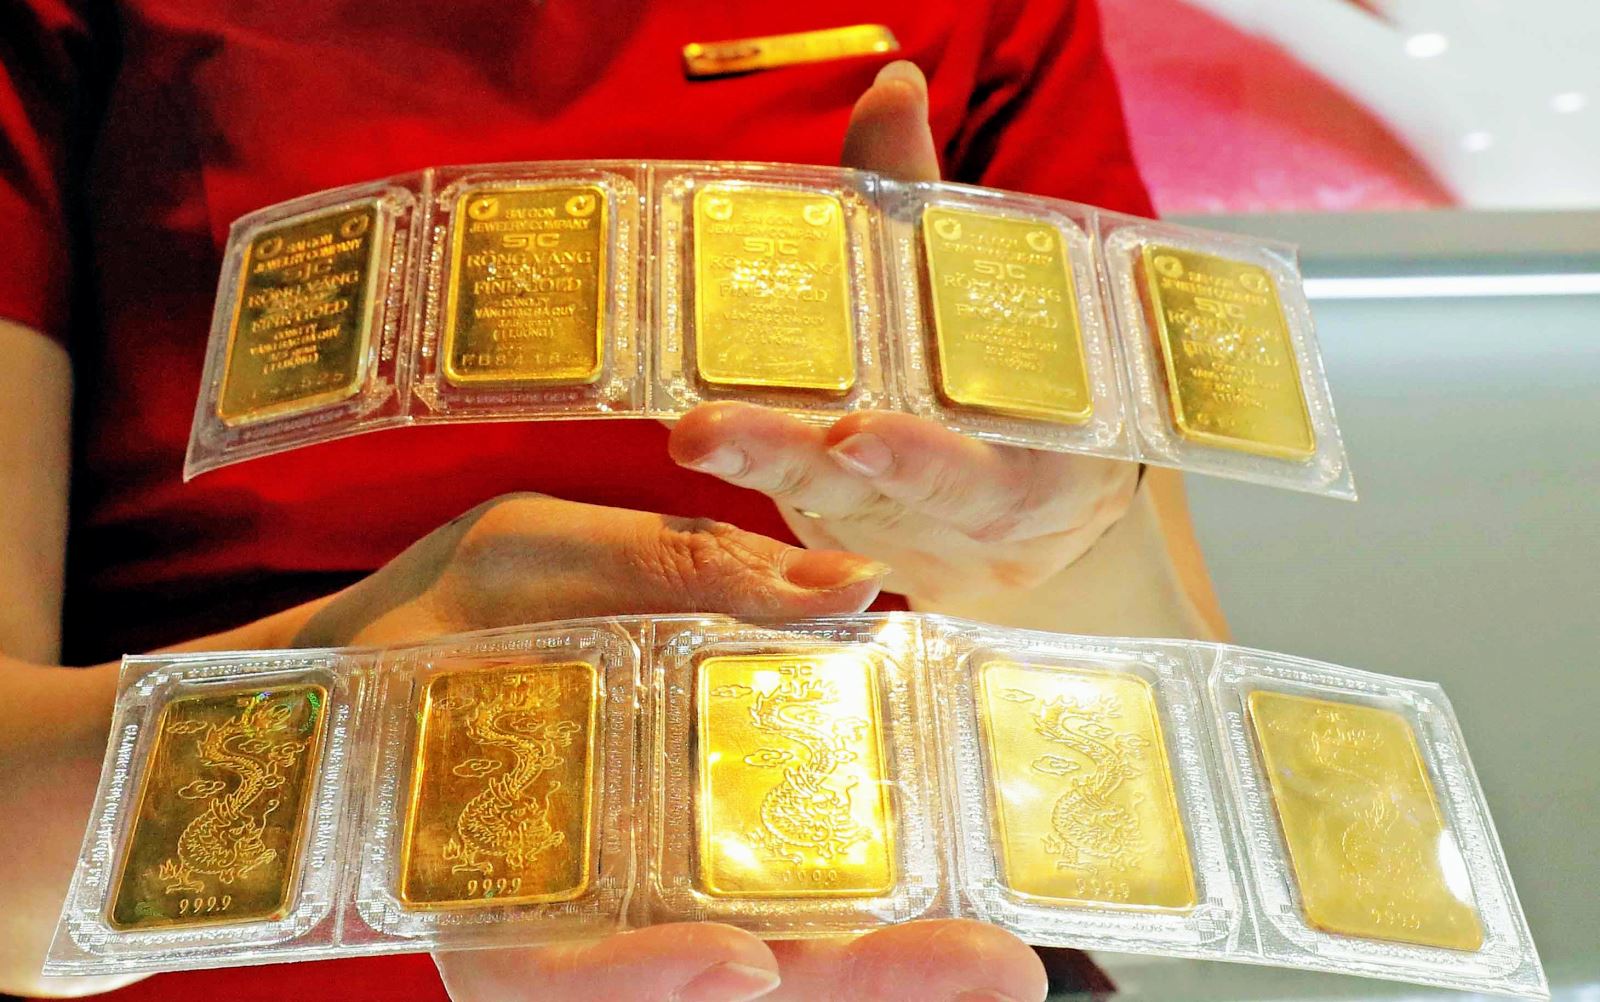  Sản phẩm vàng miếng bày bán tại Công ty vàng Bảo Tín Minh Châu, phố Hoàng Cầu, Hà Nội. Ảnh minh họa: Trần Việt/TTXVN